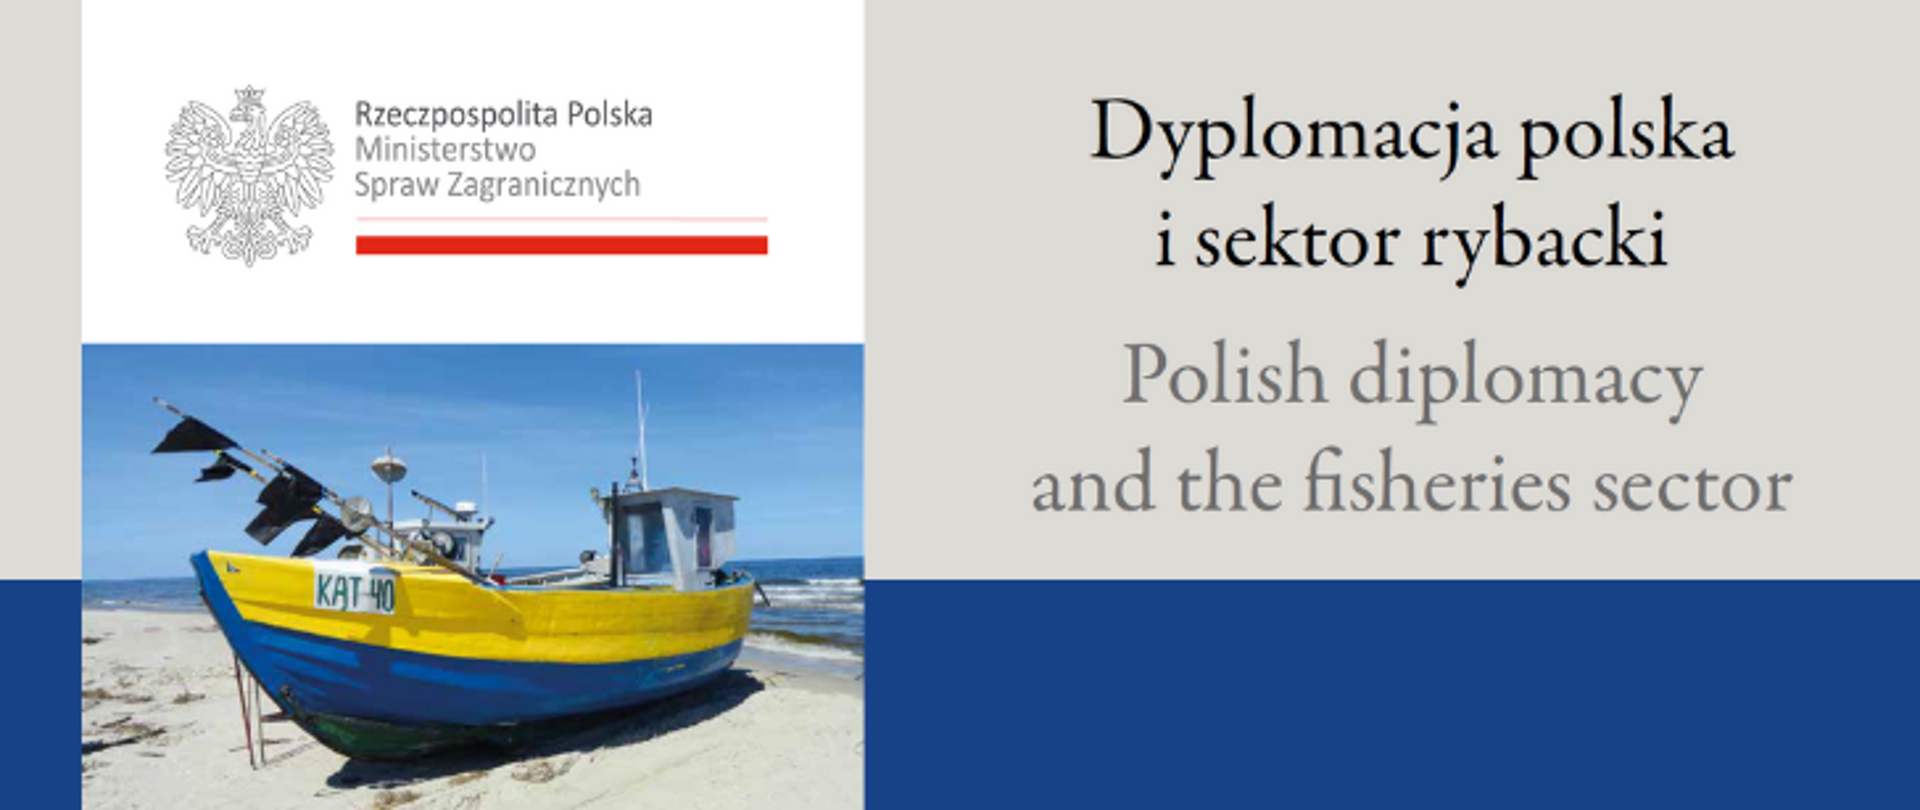 Dyplomacja polska i sektor rybacki www.png